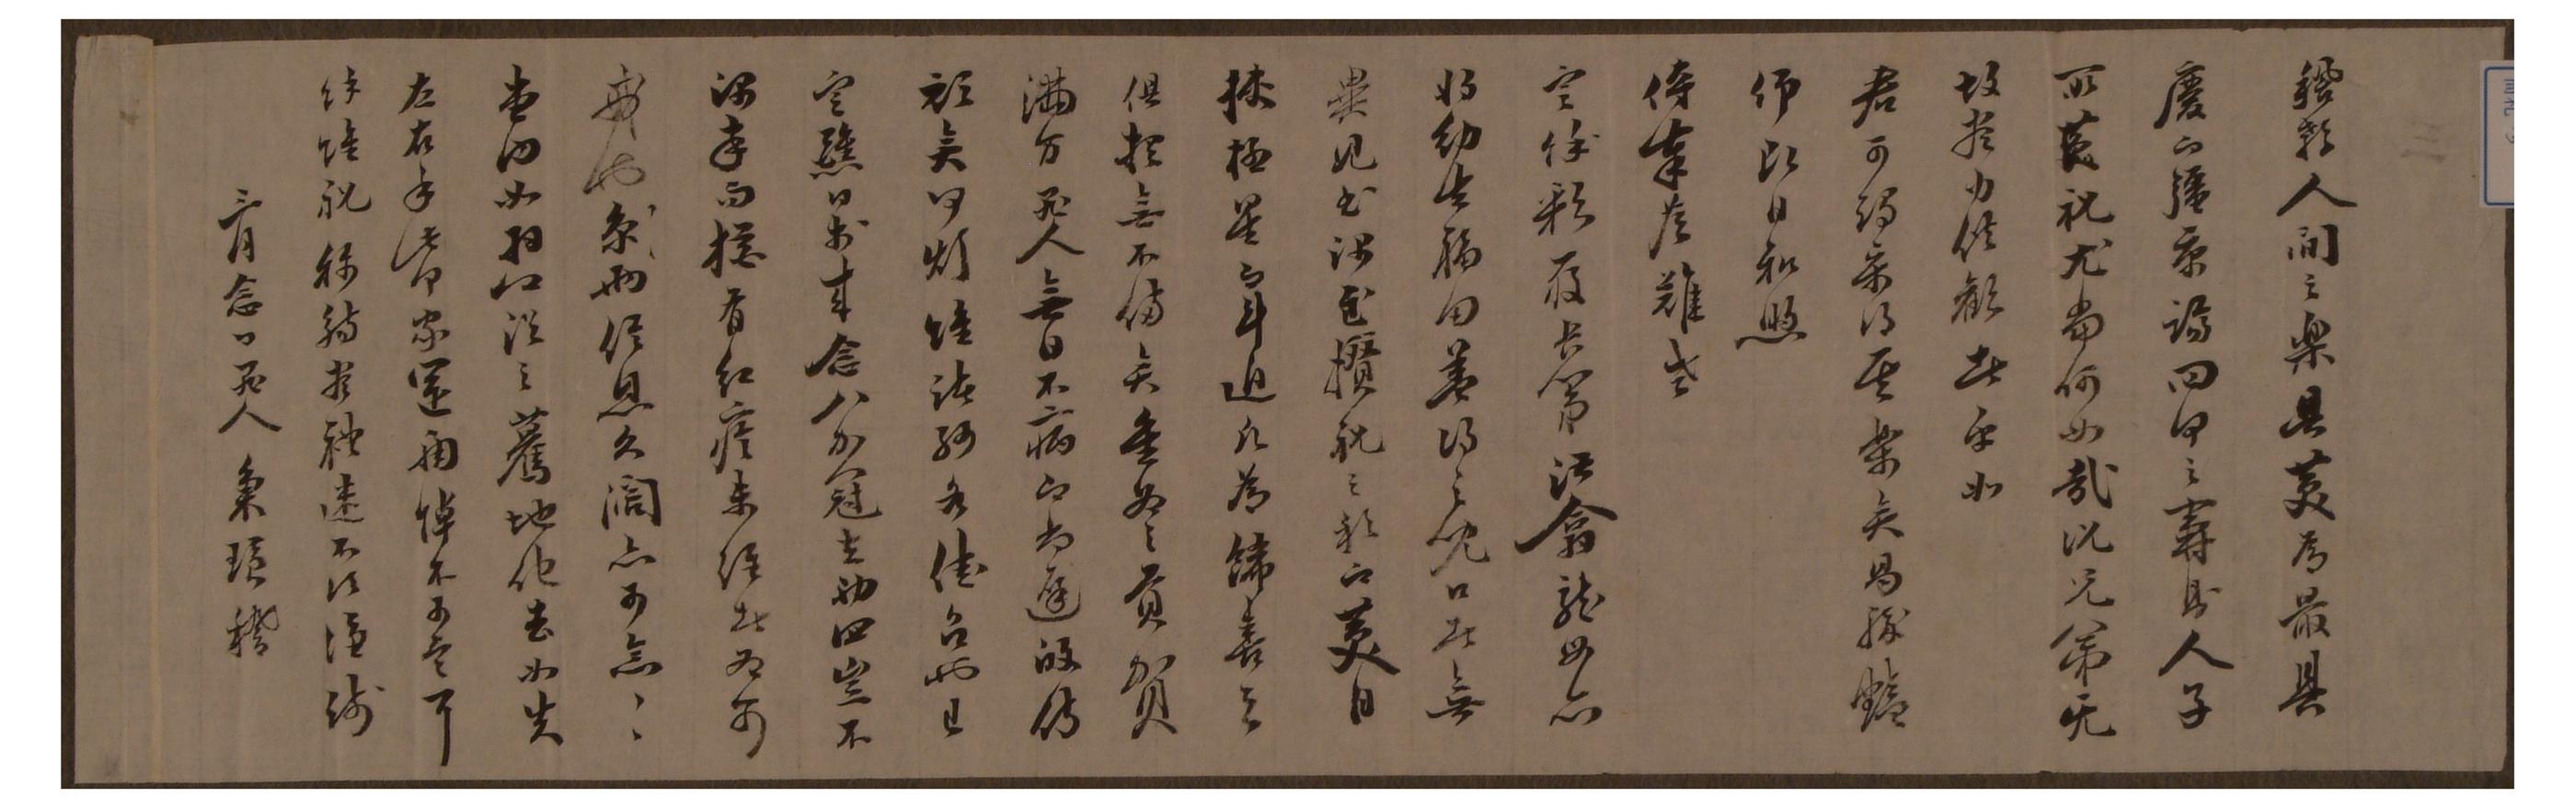 김병황이 상대의 안부와 함께 집안 종제의 죽음을 알리는 내용의 편지